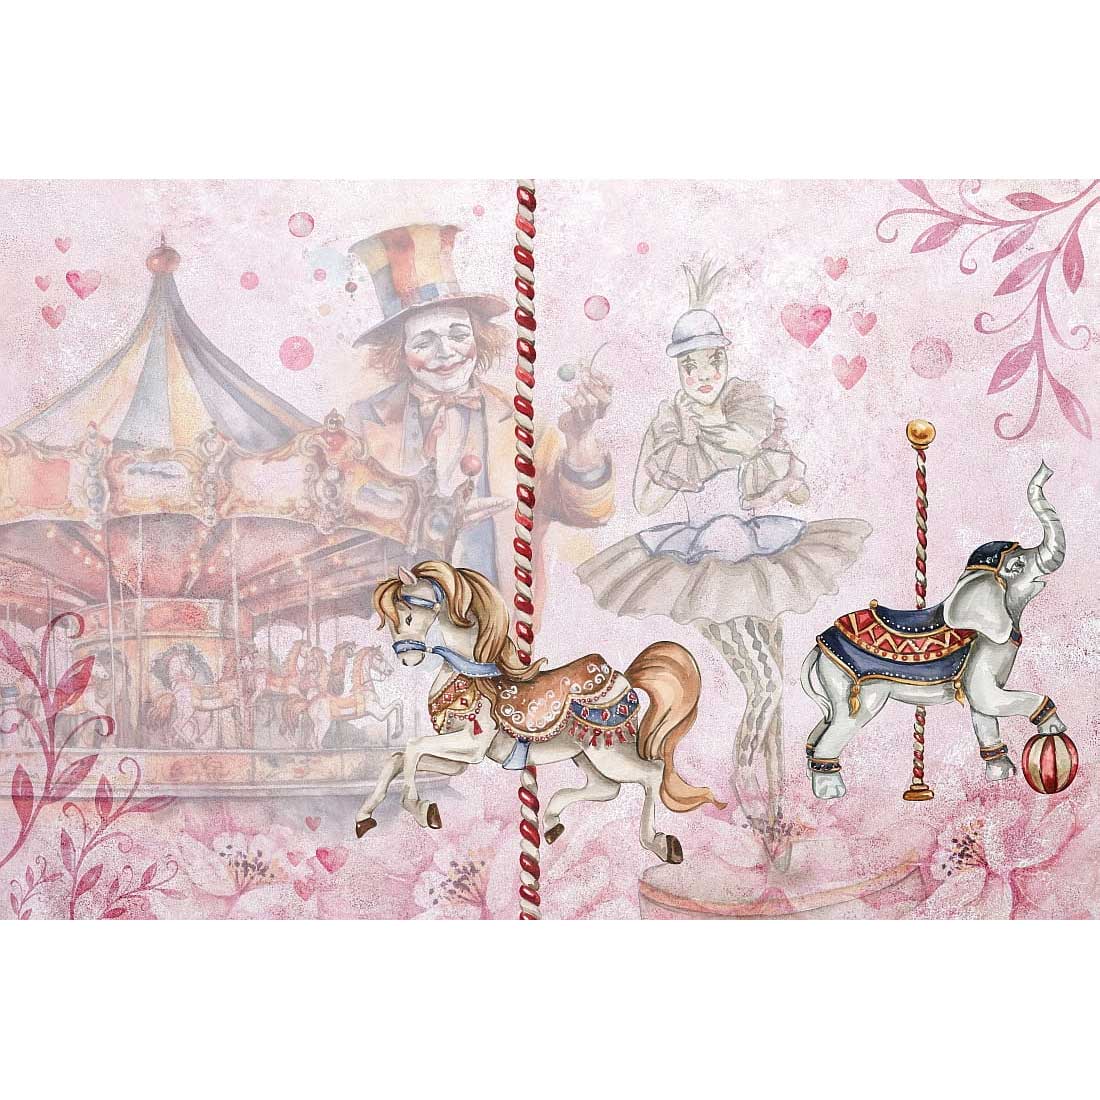 www.smallart.pl tapeta fototapeta dziecięca magiczny cyrk malumi karuzela konie koniki klaun klauny cyrk dziecięcy różowy balet (2)